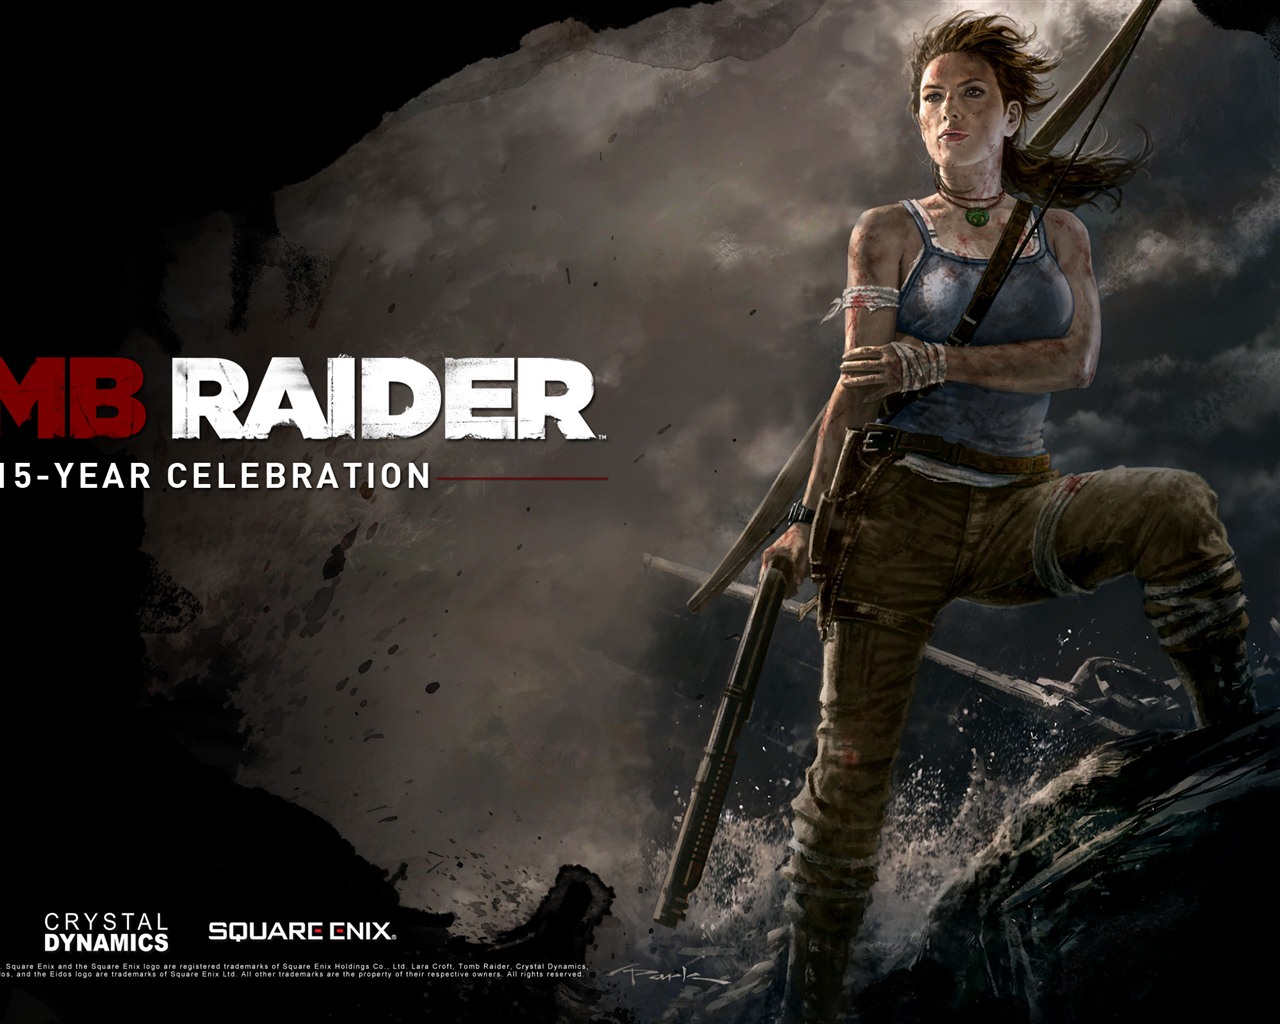 Tomb Raider 15-Year Celebration 古墓丽影15周年纪念版 高清壁纸1 - 1280x1024